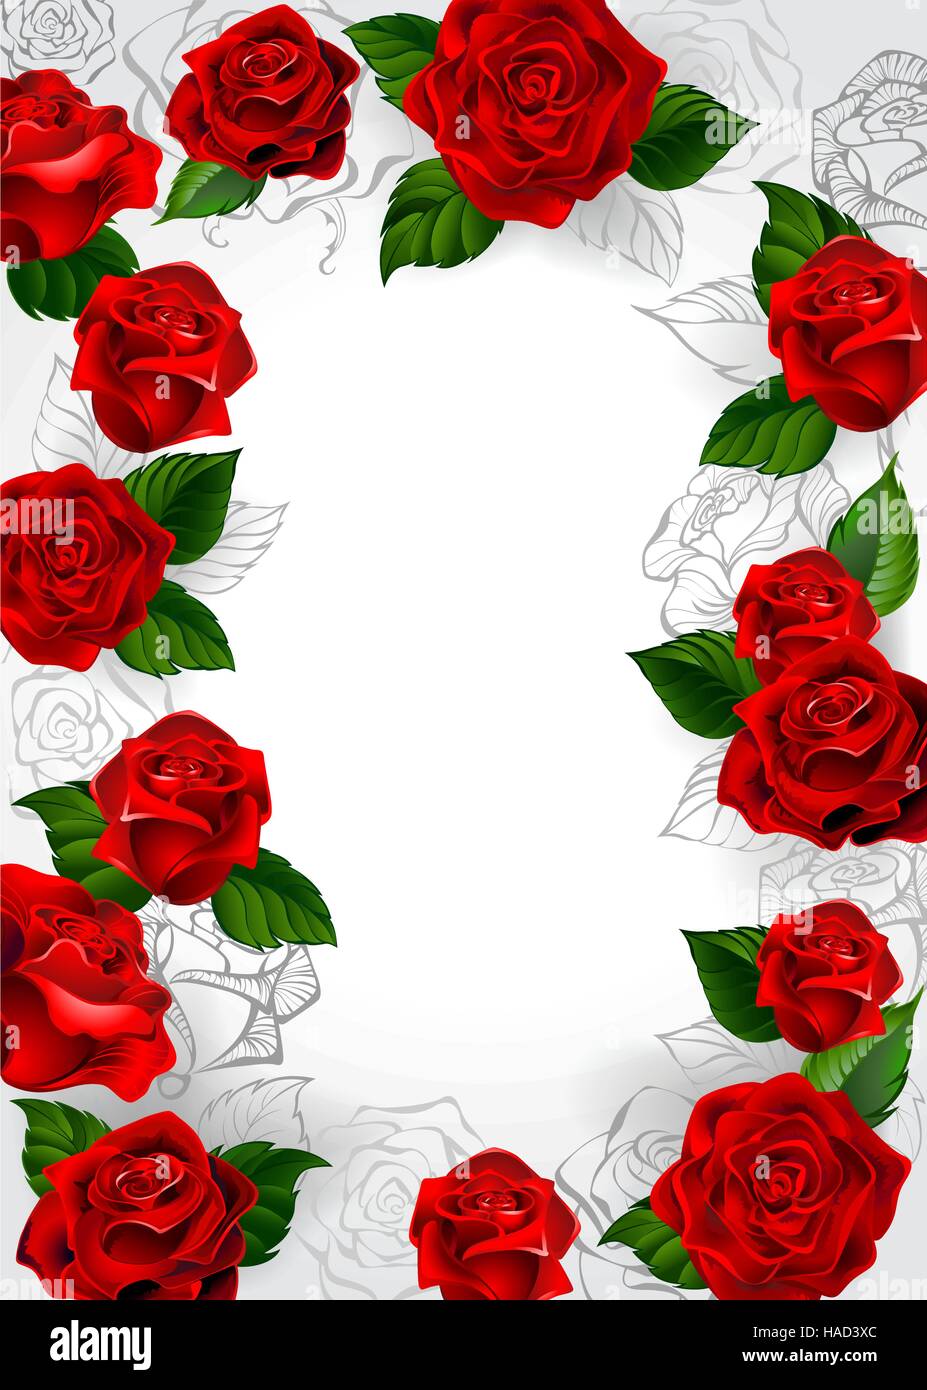 Image de roses rouges rosiers et contours sur un fond blanc. Illustration de Vecteur